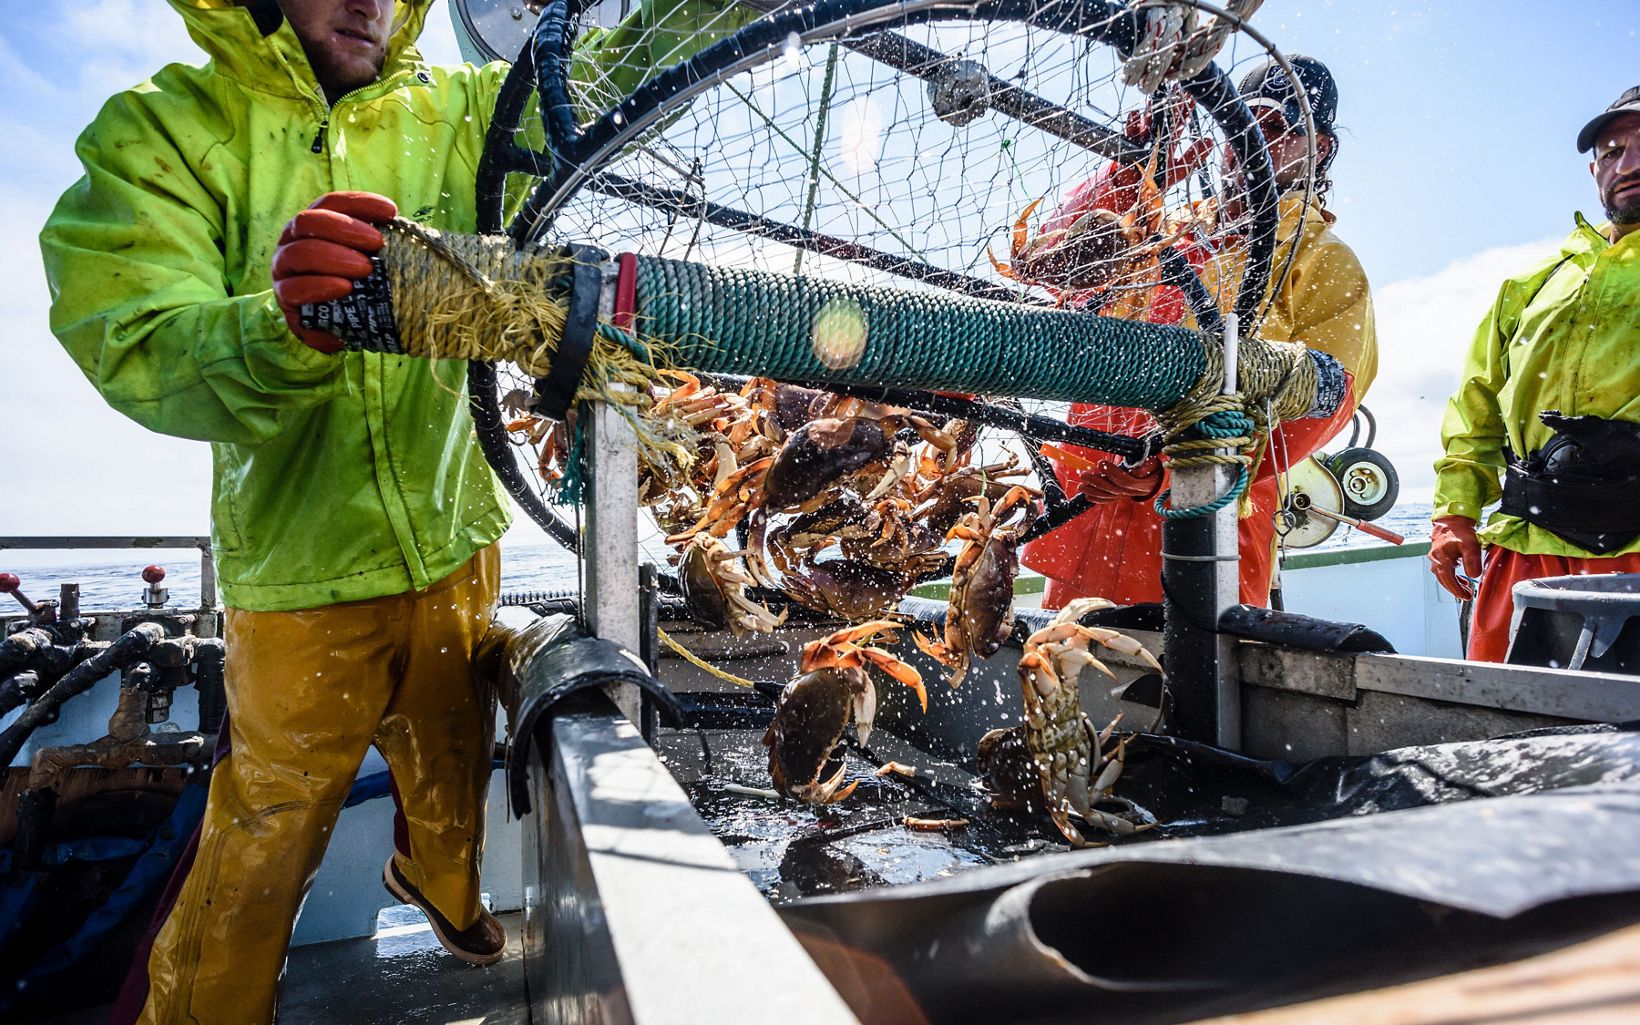 DESCARGA DEL CANGREJO DUNGENES Frente a este reto, los líderes de la pesca del cangrejo se han comprometido a trabajar con socios como The Nature Conservancy para reducir los enredos. © David Hills Photography